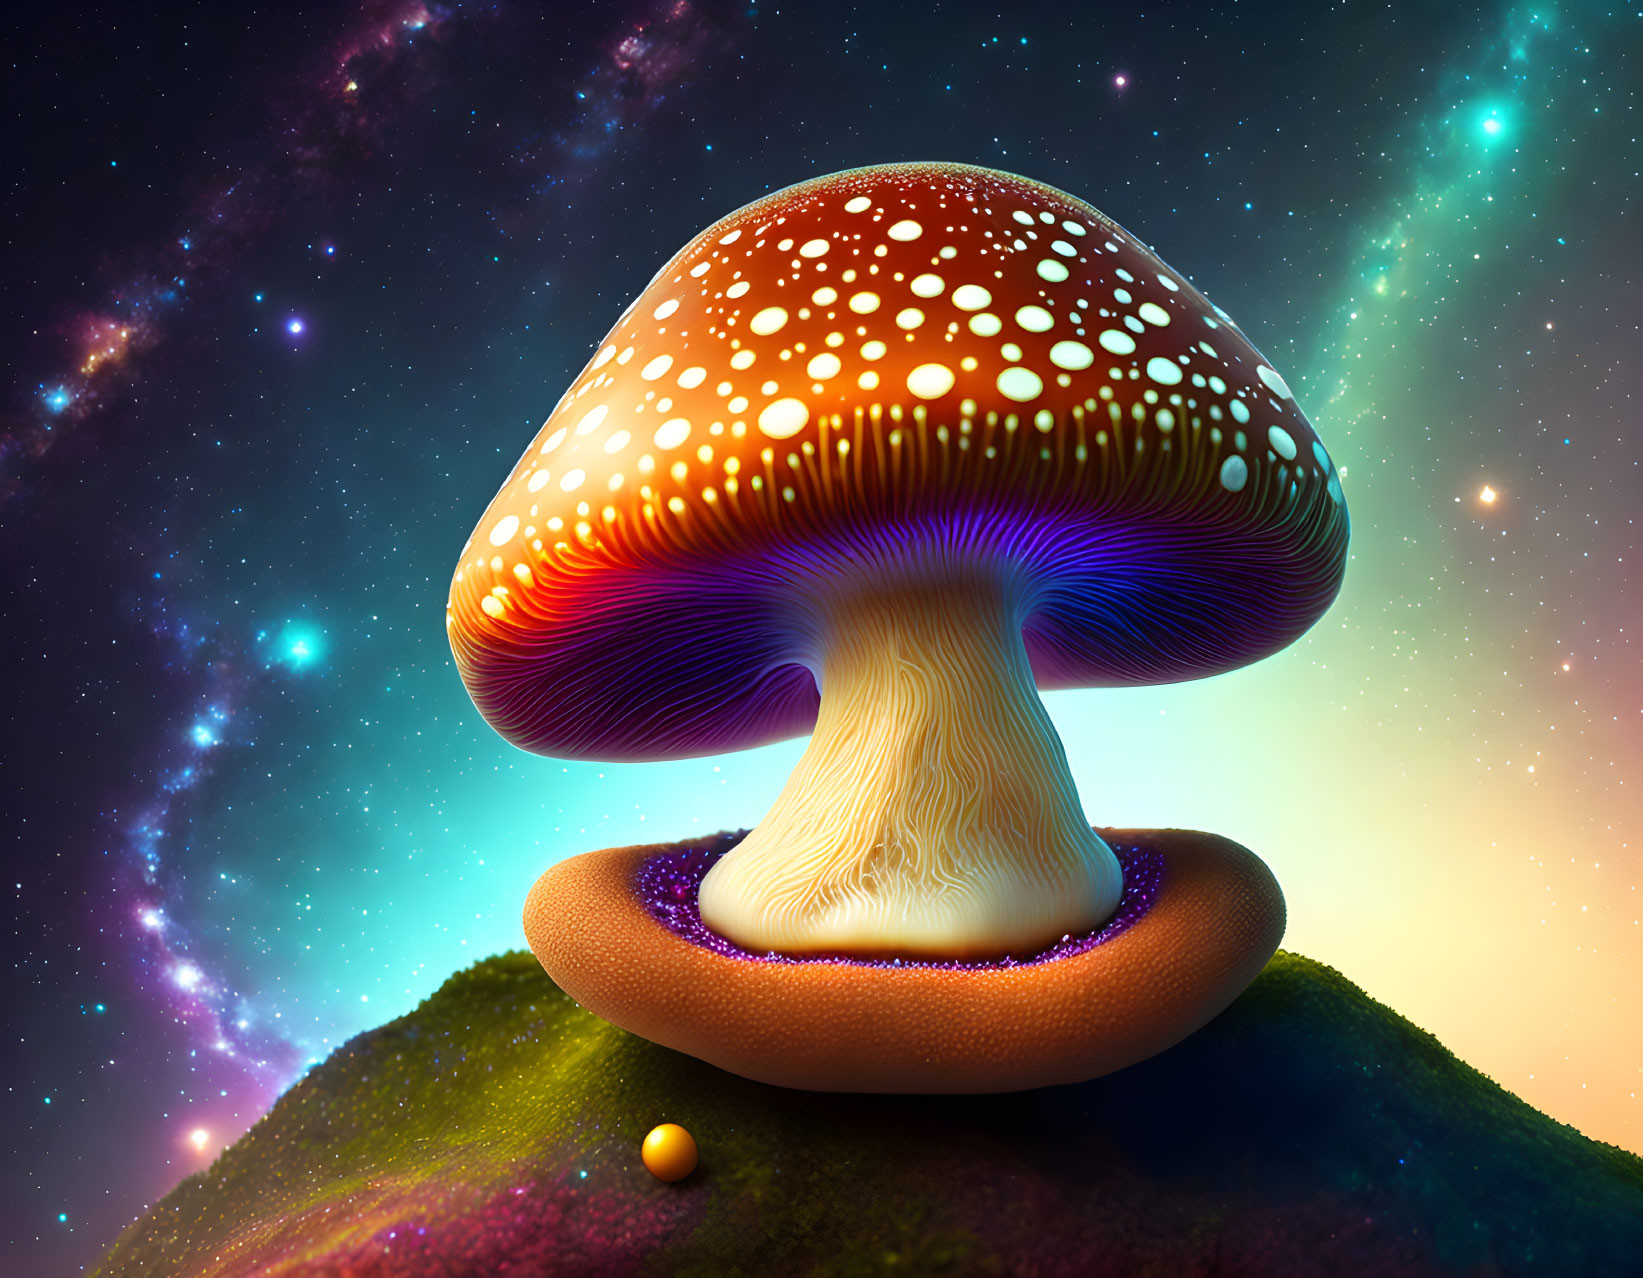  magic mushroom